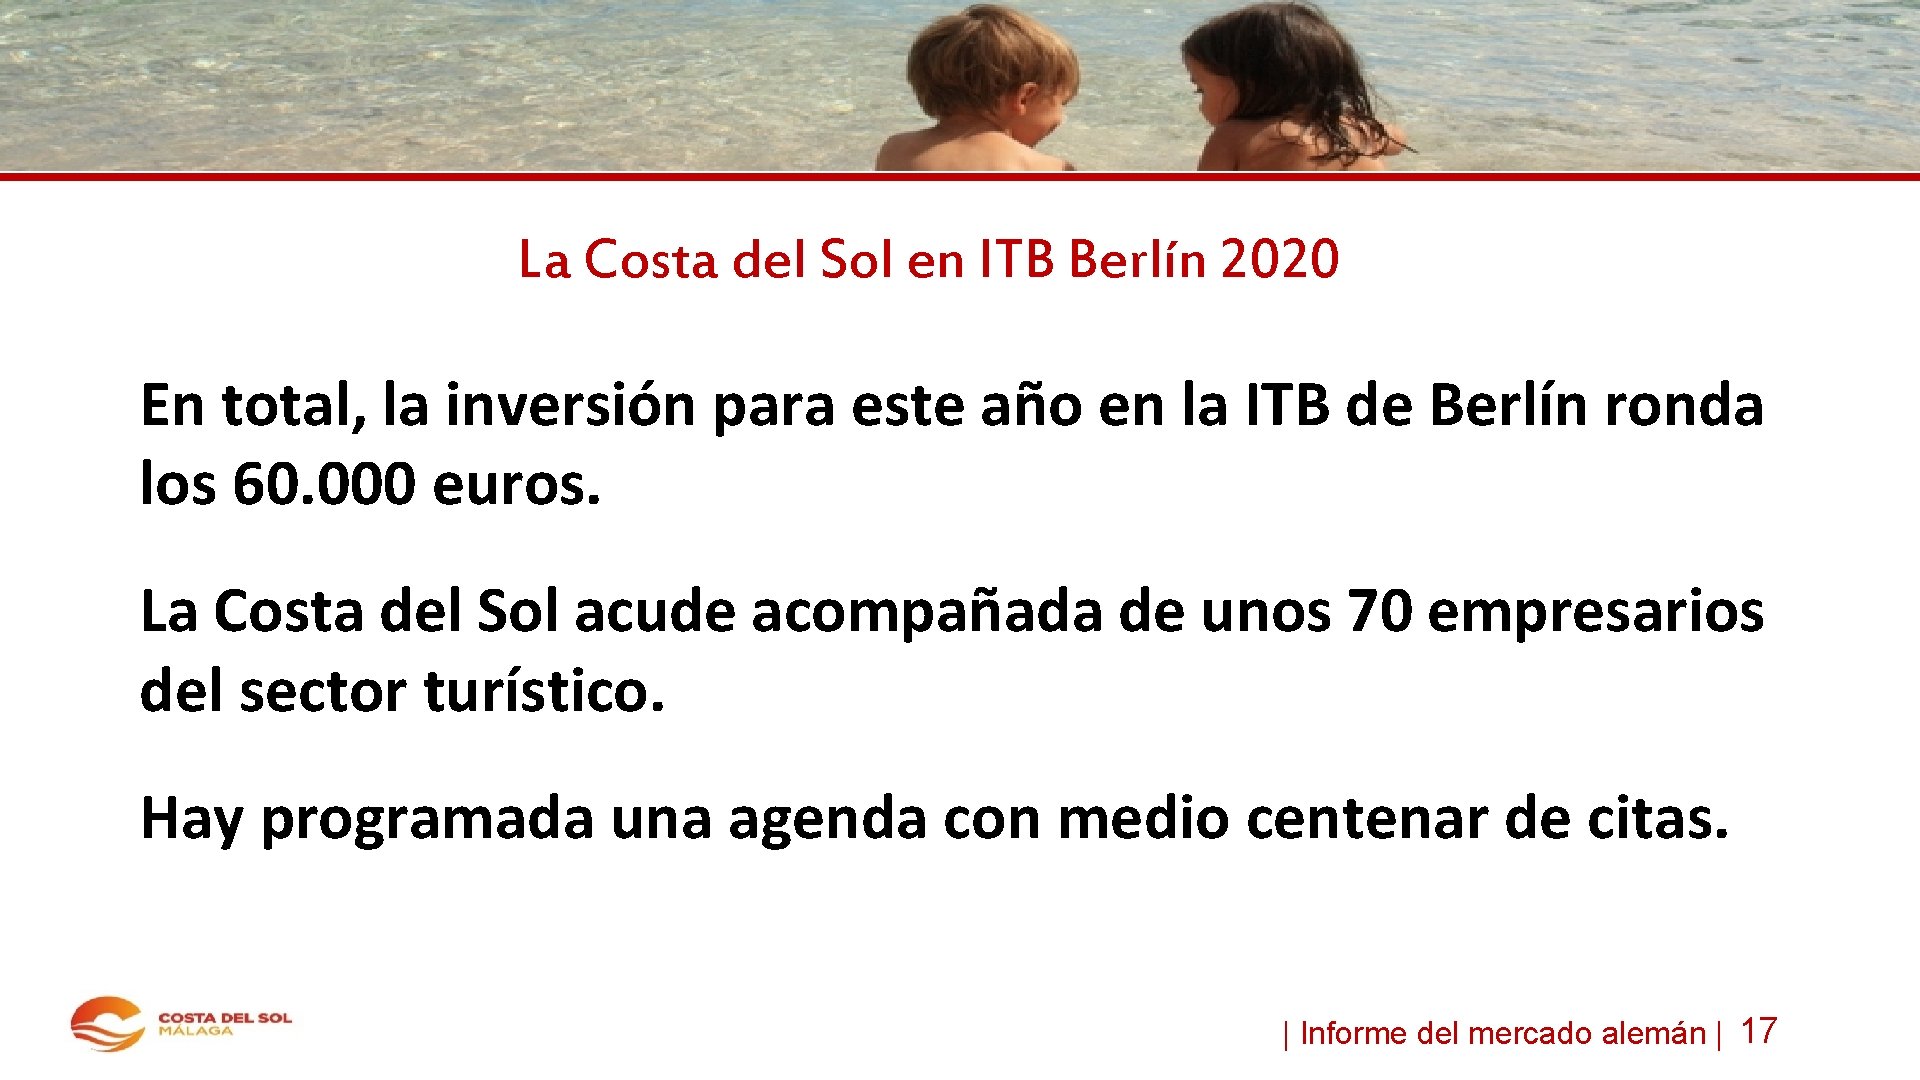 La Costa del Sol en ITB Berlín 2020 En total, la inversión para este